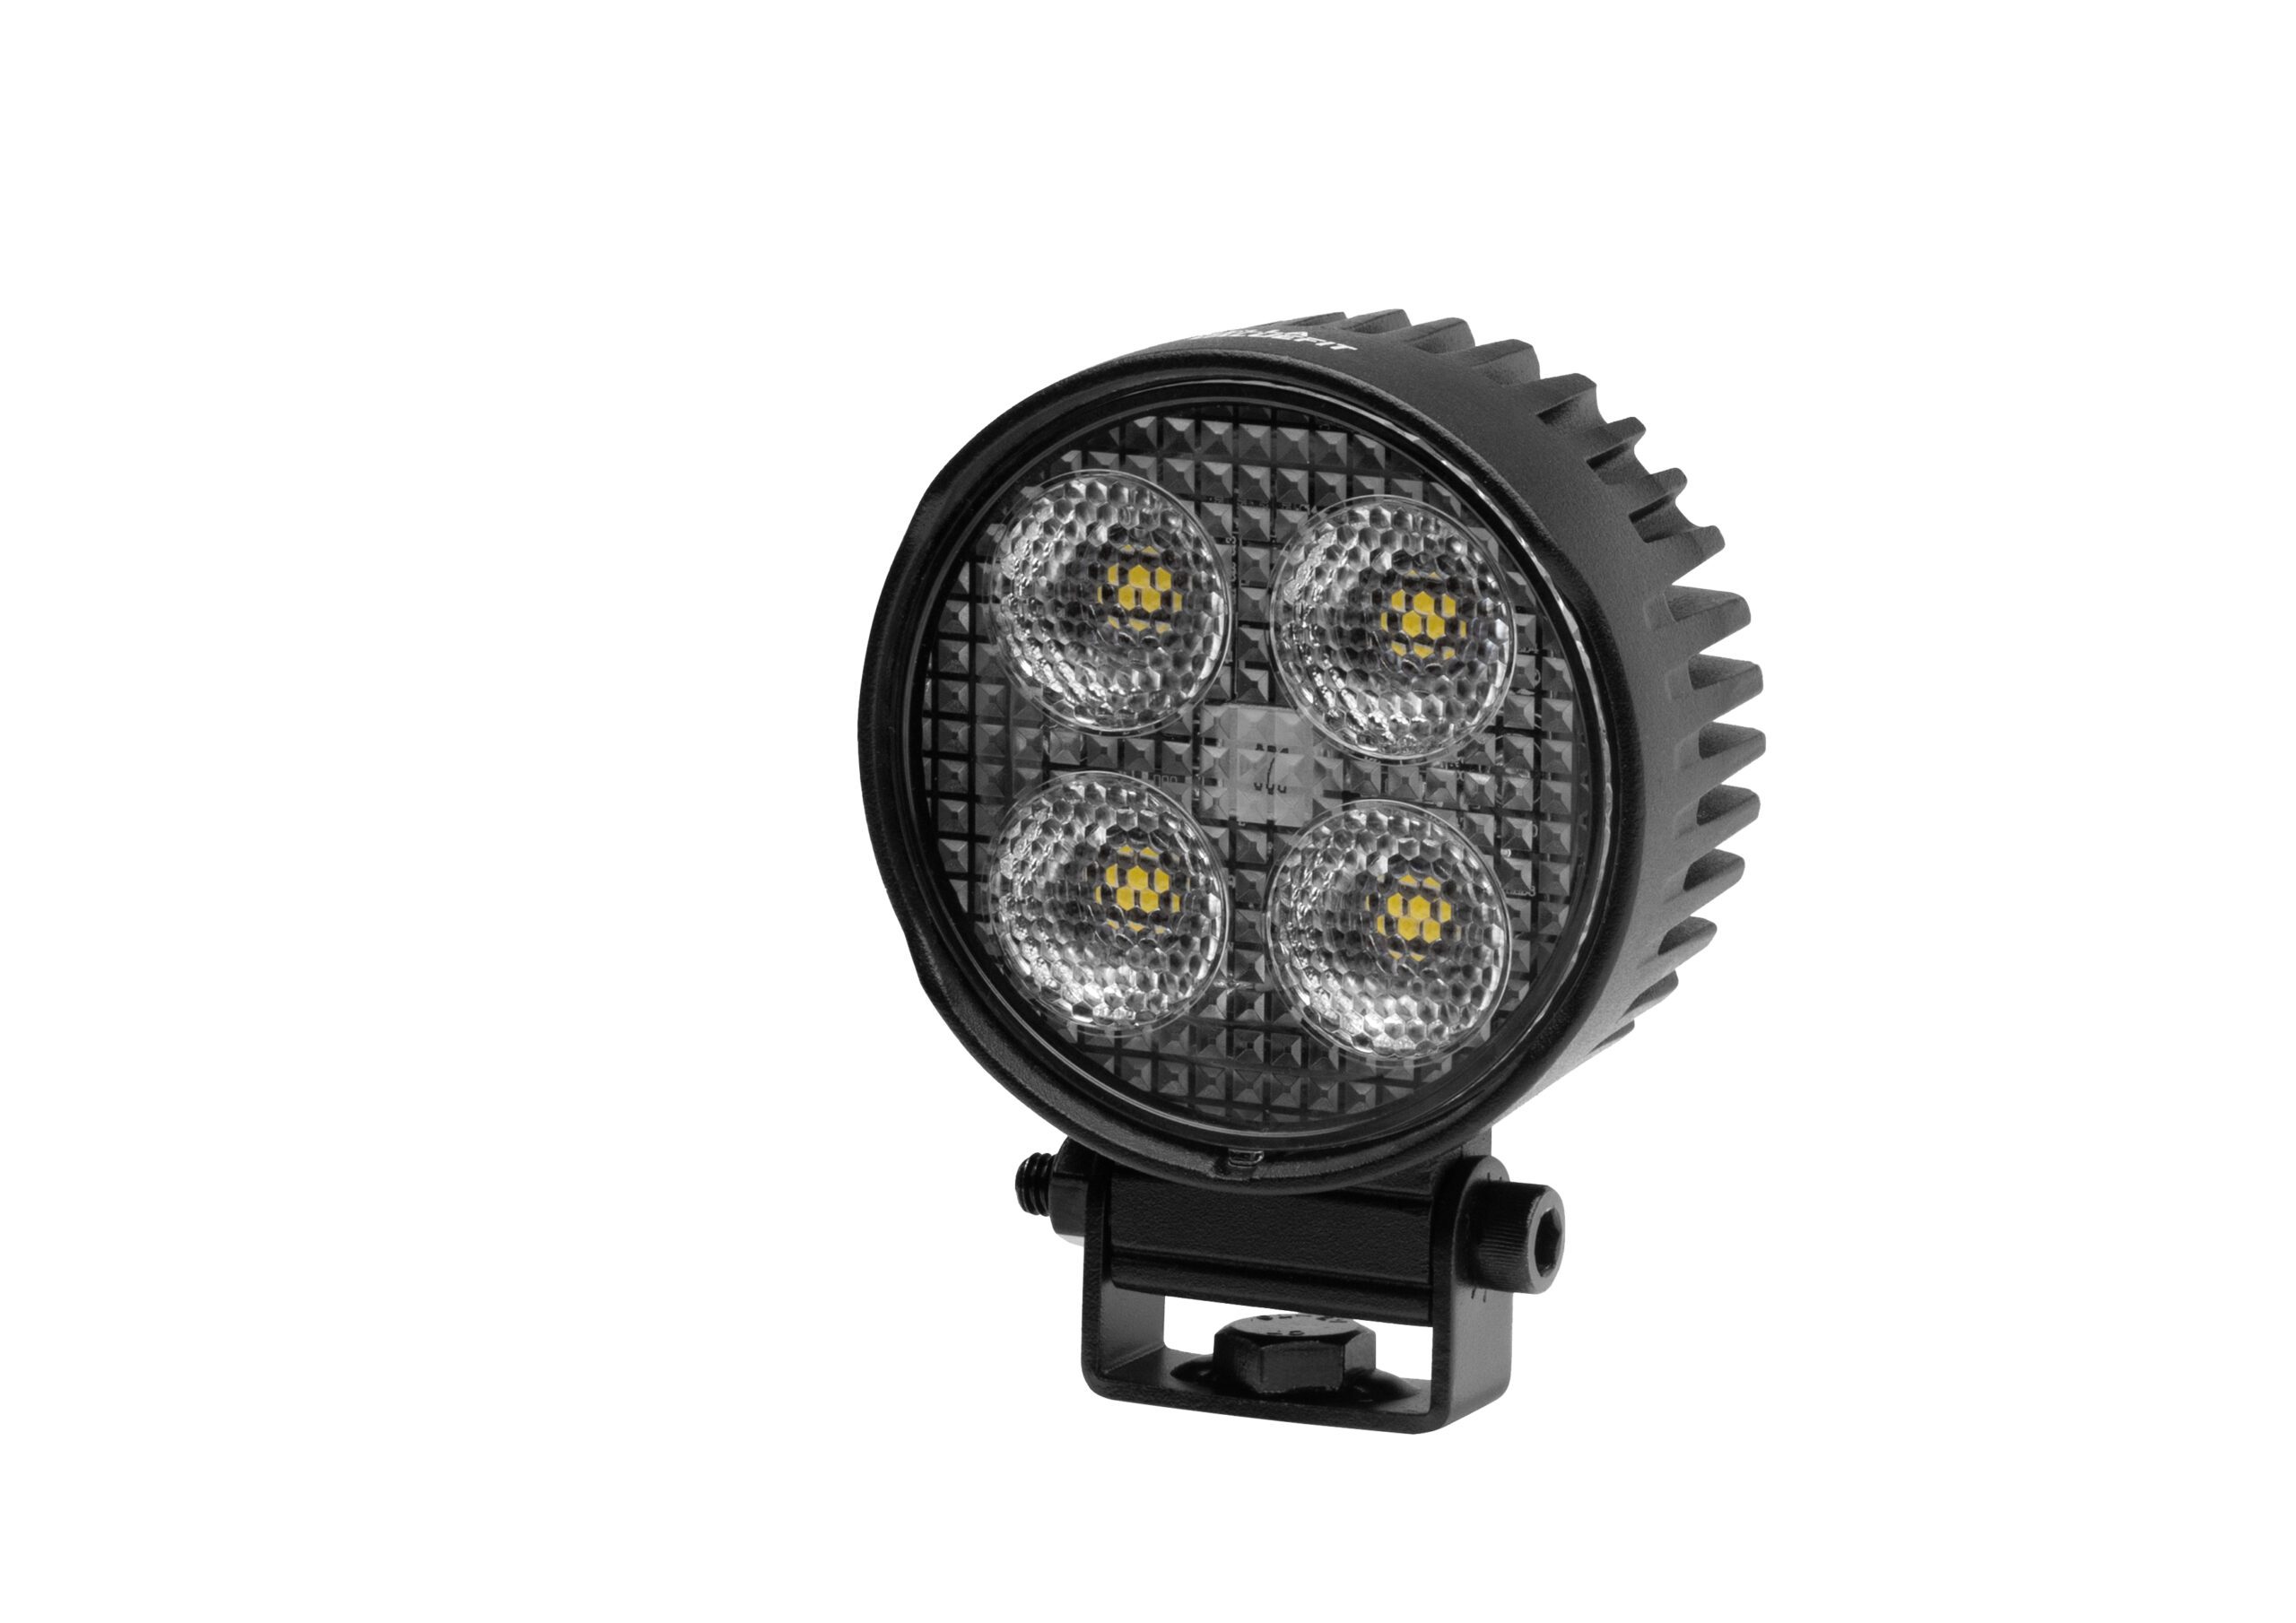 LED Arbeitsscheinwerfer HELLA – Automotive Lights